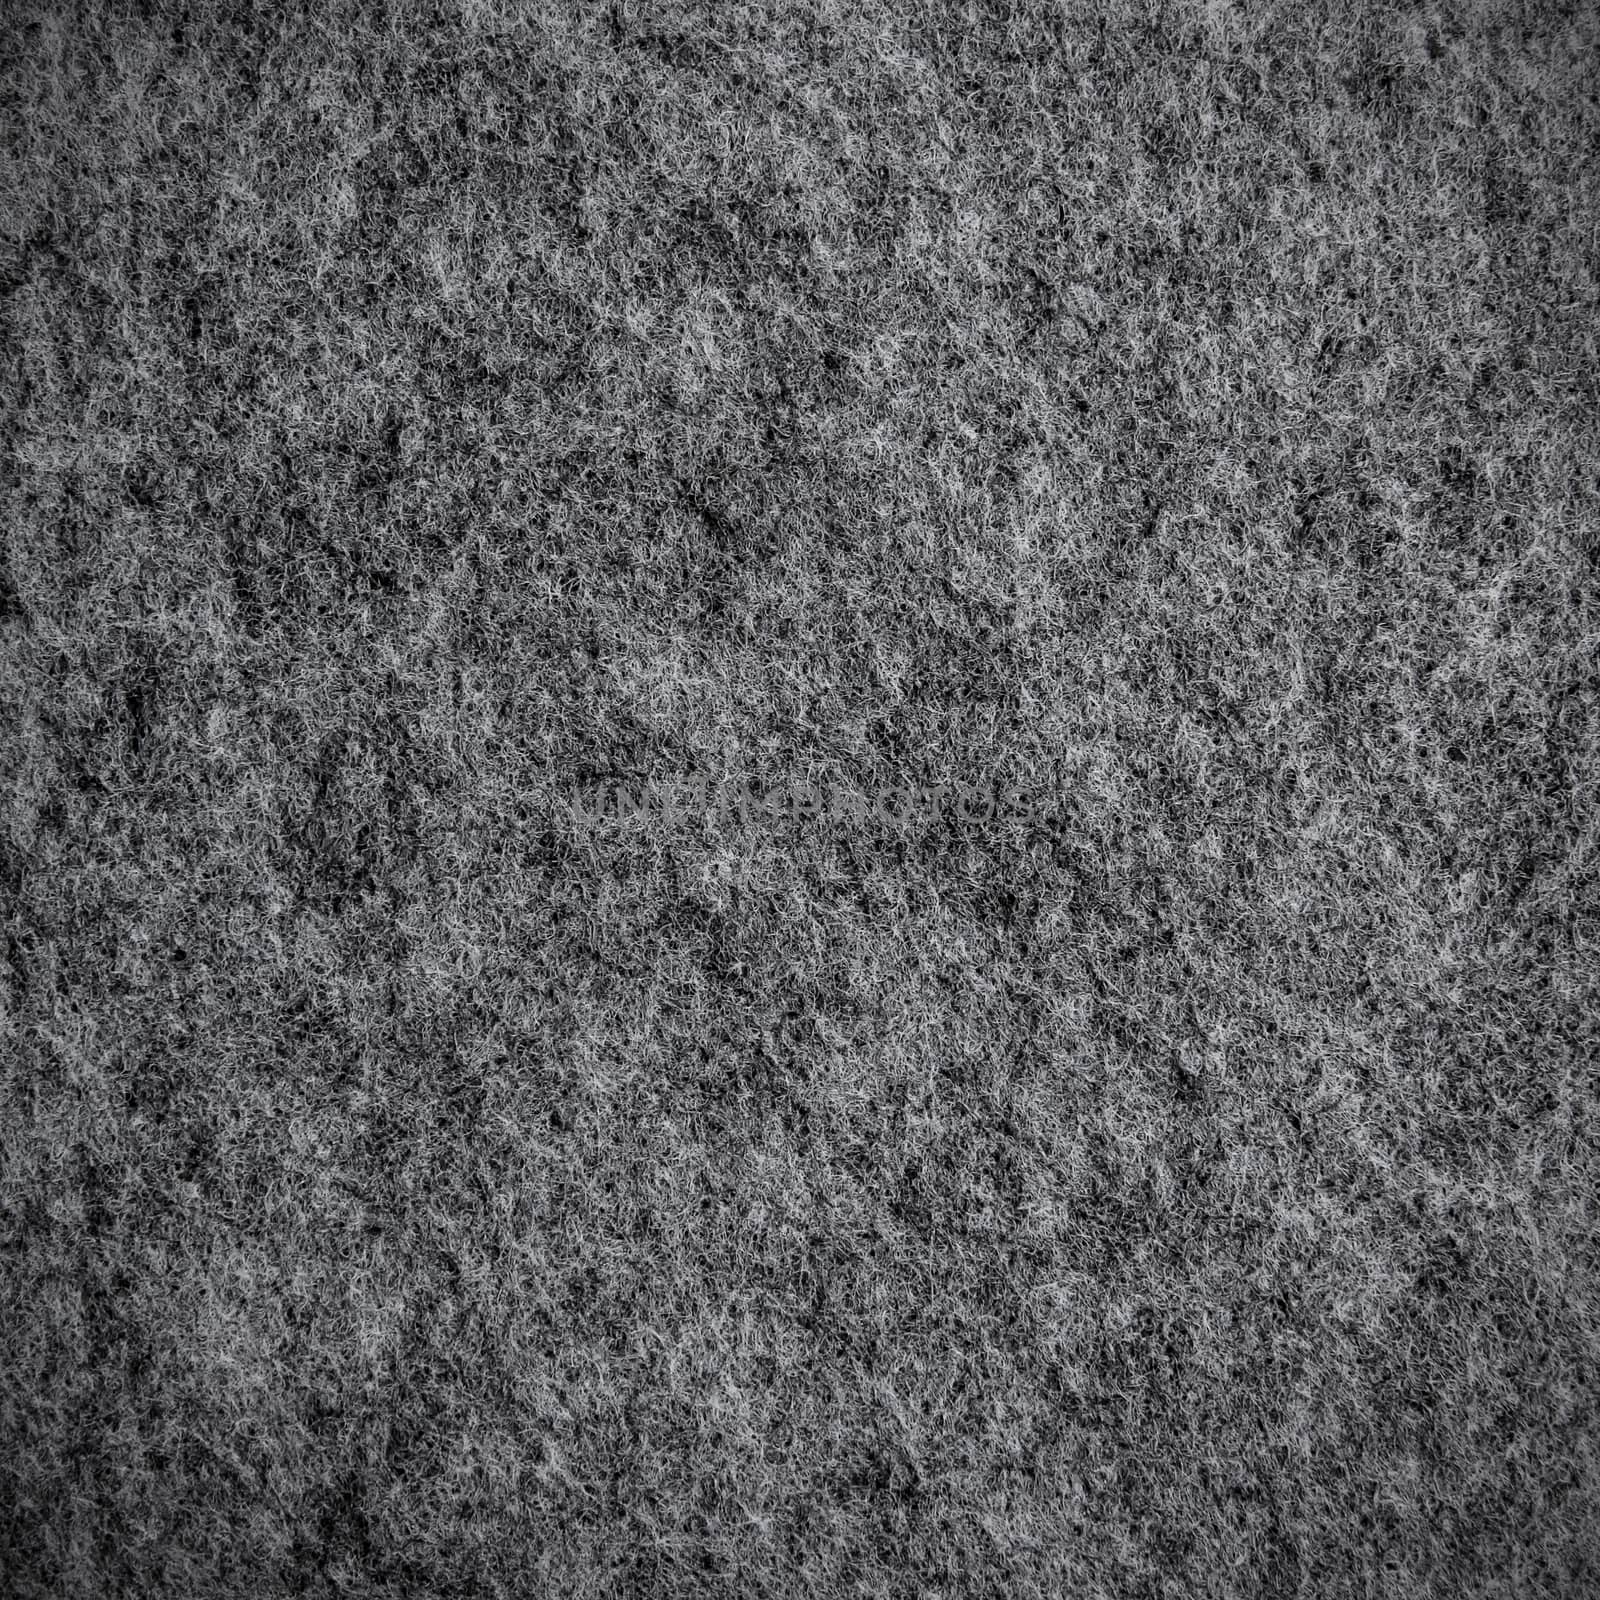 Grey carpet texture by liewluck